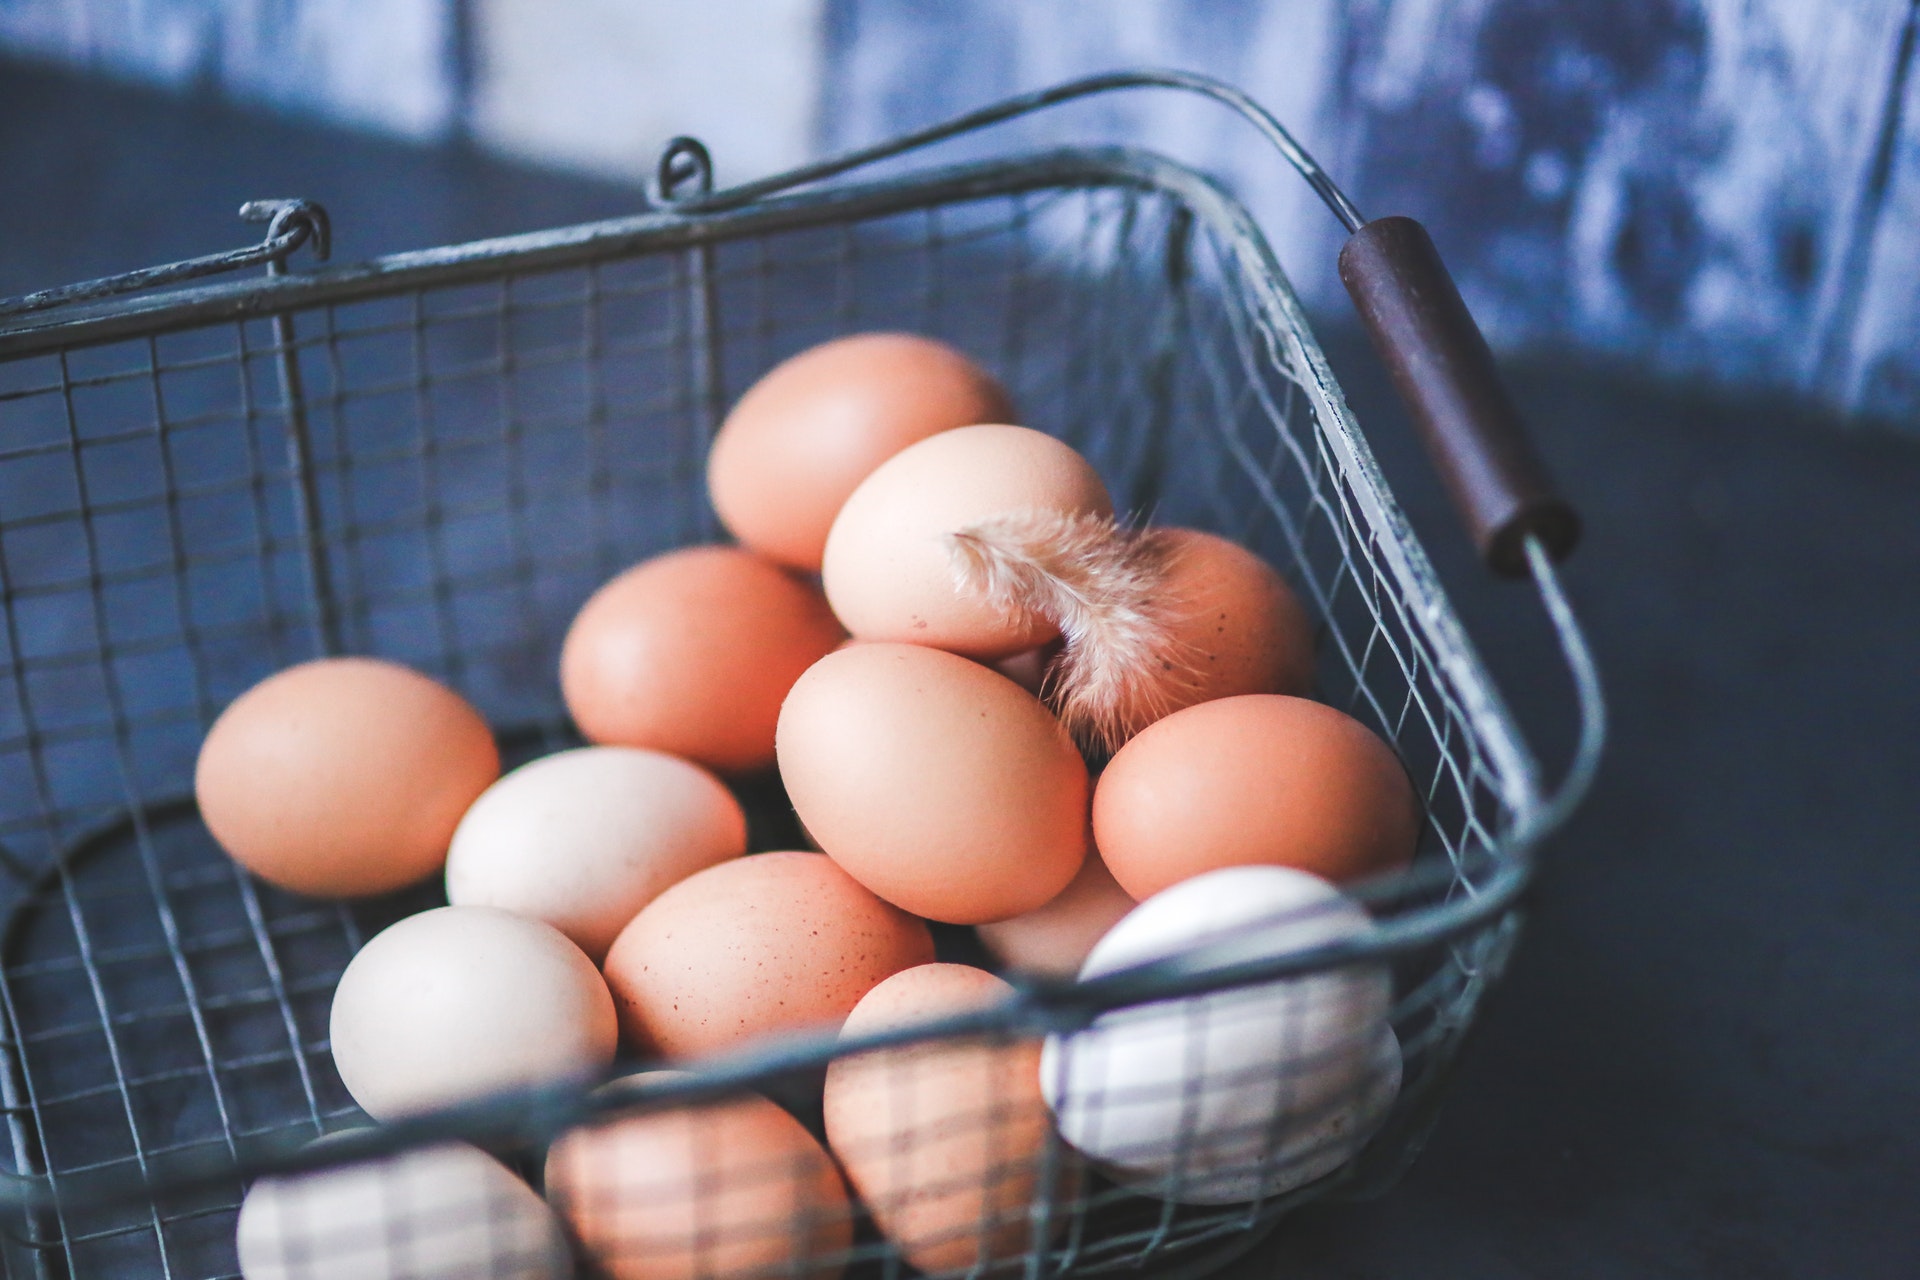 Eggs in a metal basket